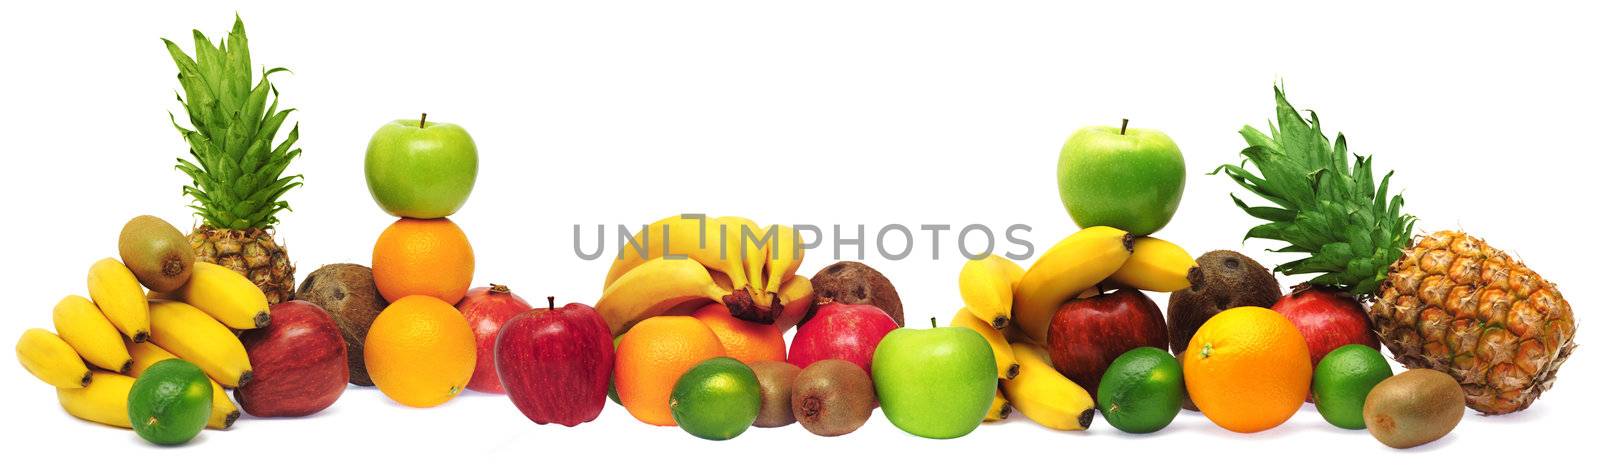 Group of fresh fruits by Gdolgikh